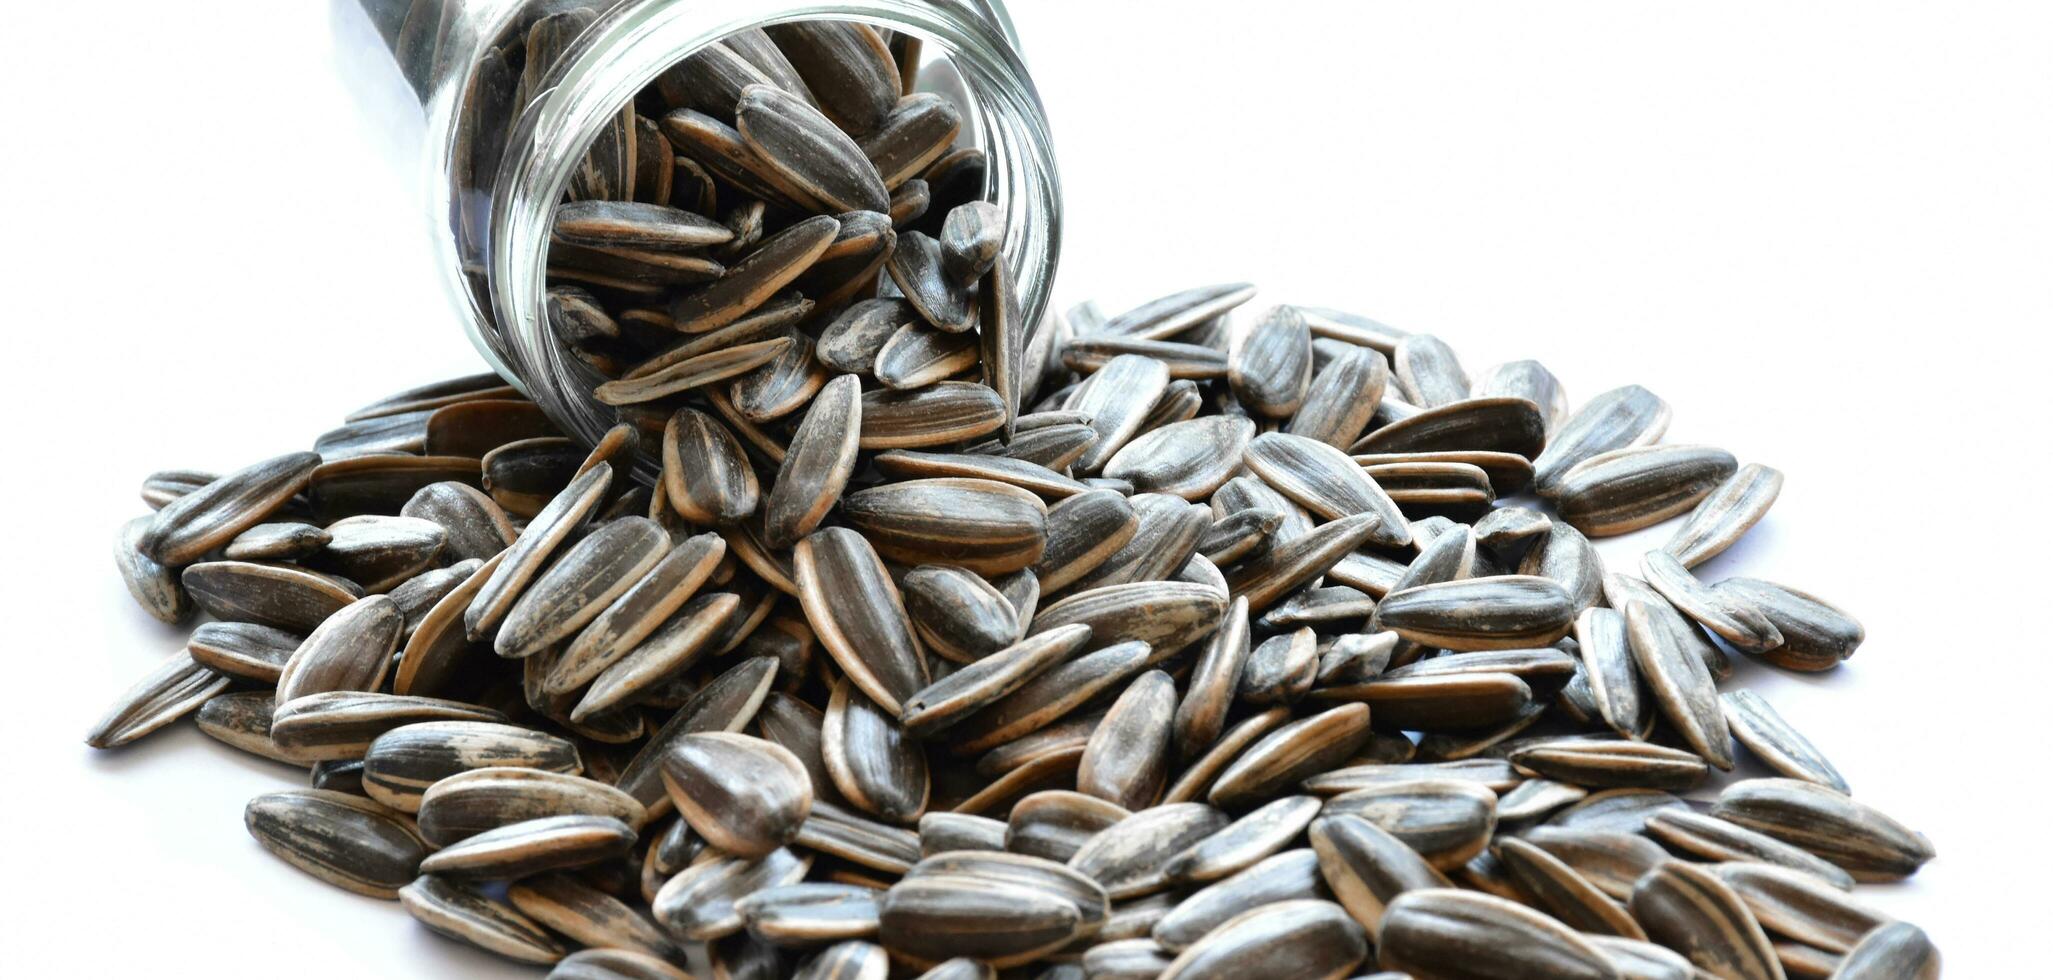 girasol semillas para comiendo como bocadillo en tiempo libre. foto